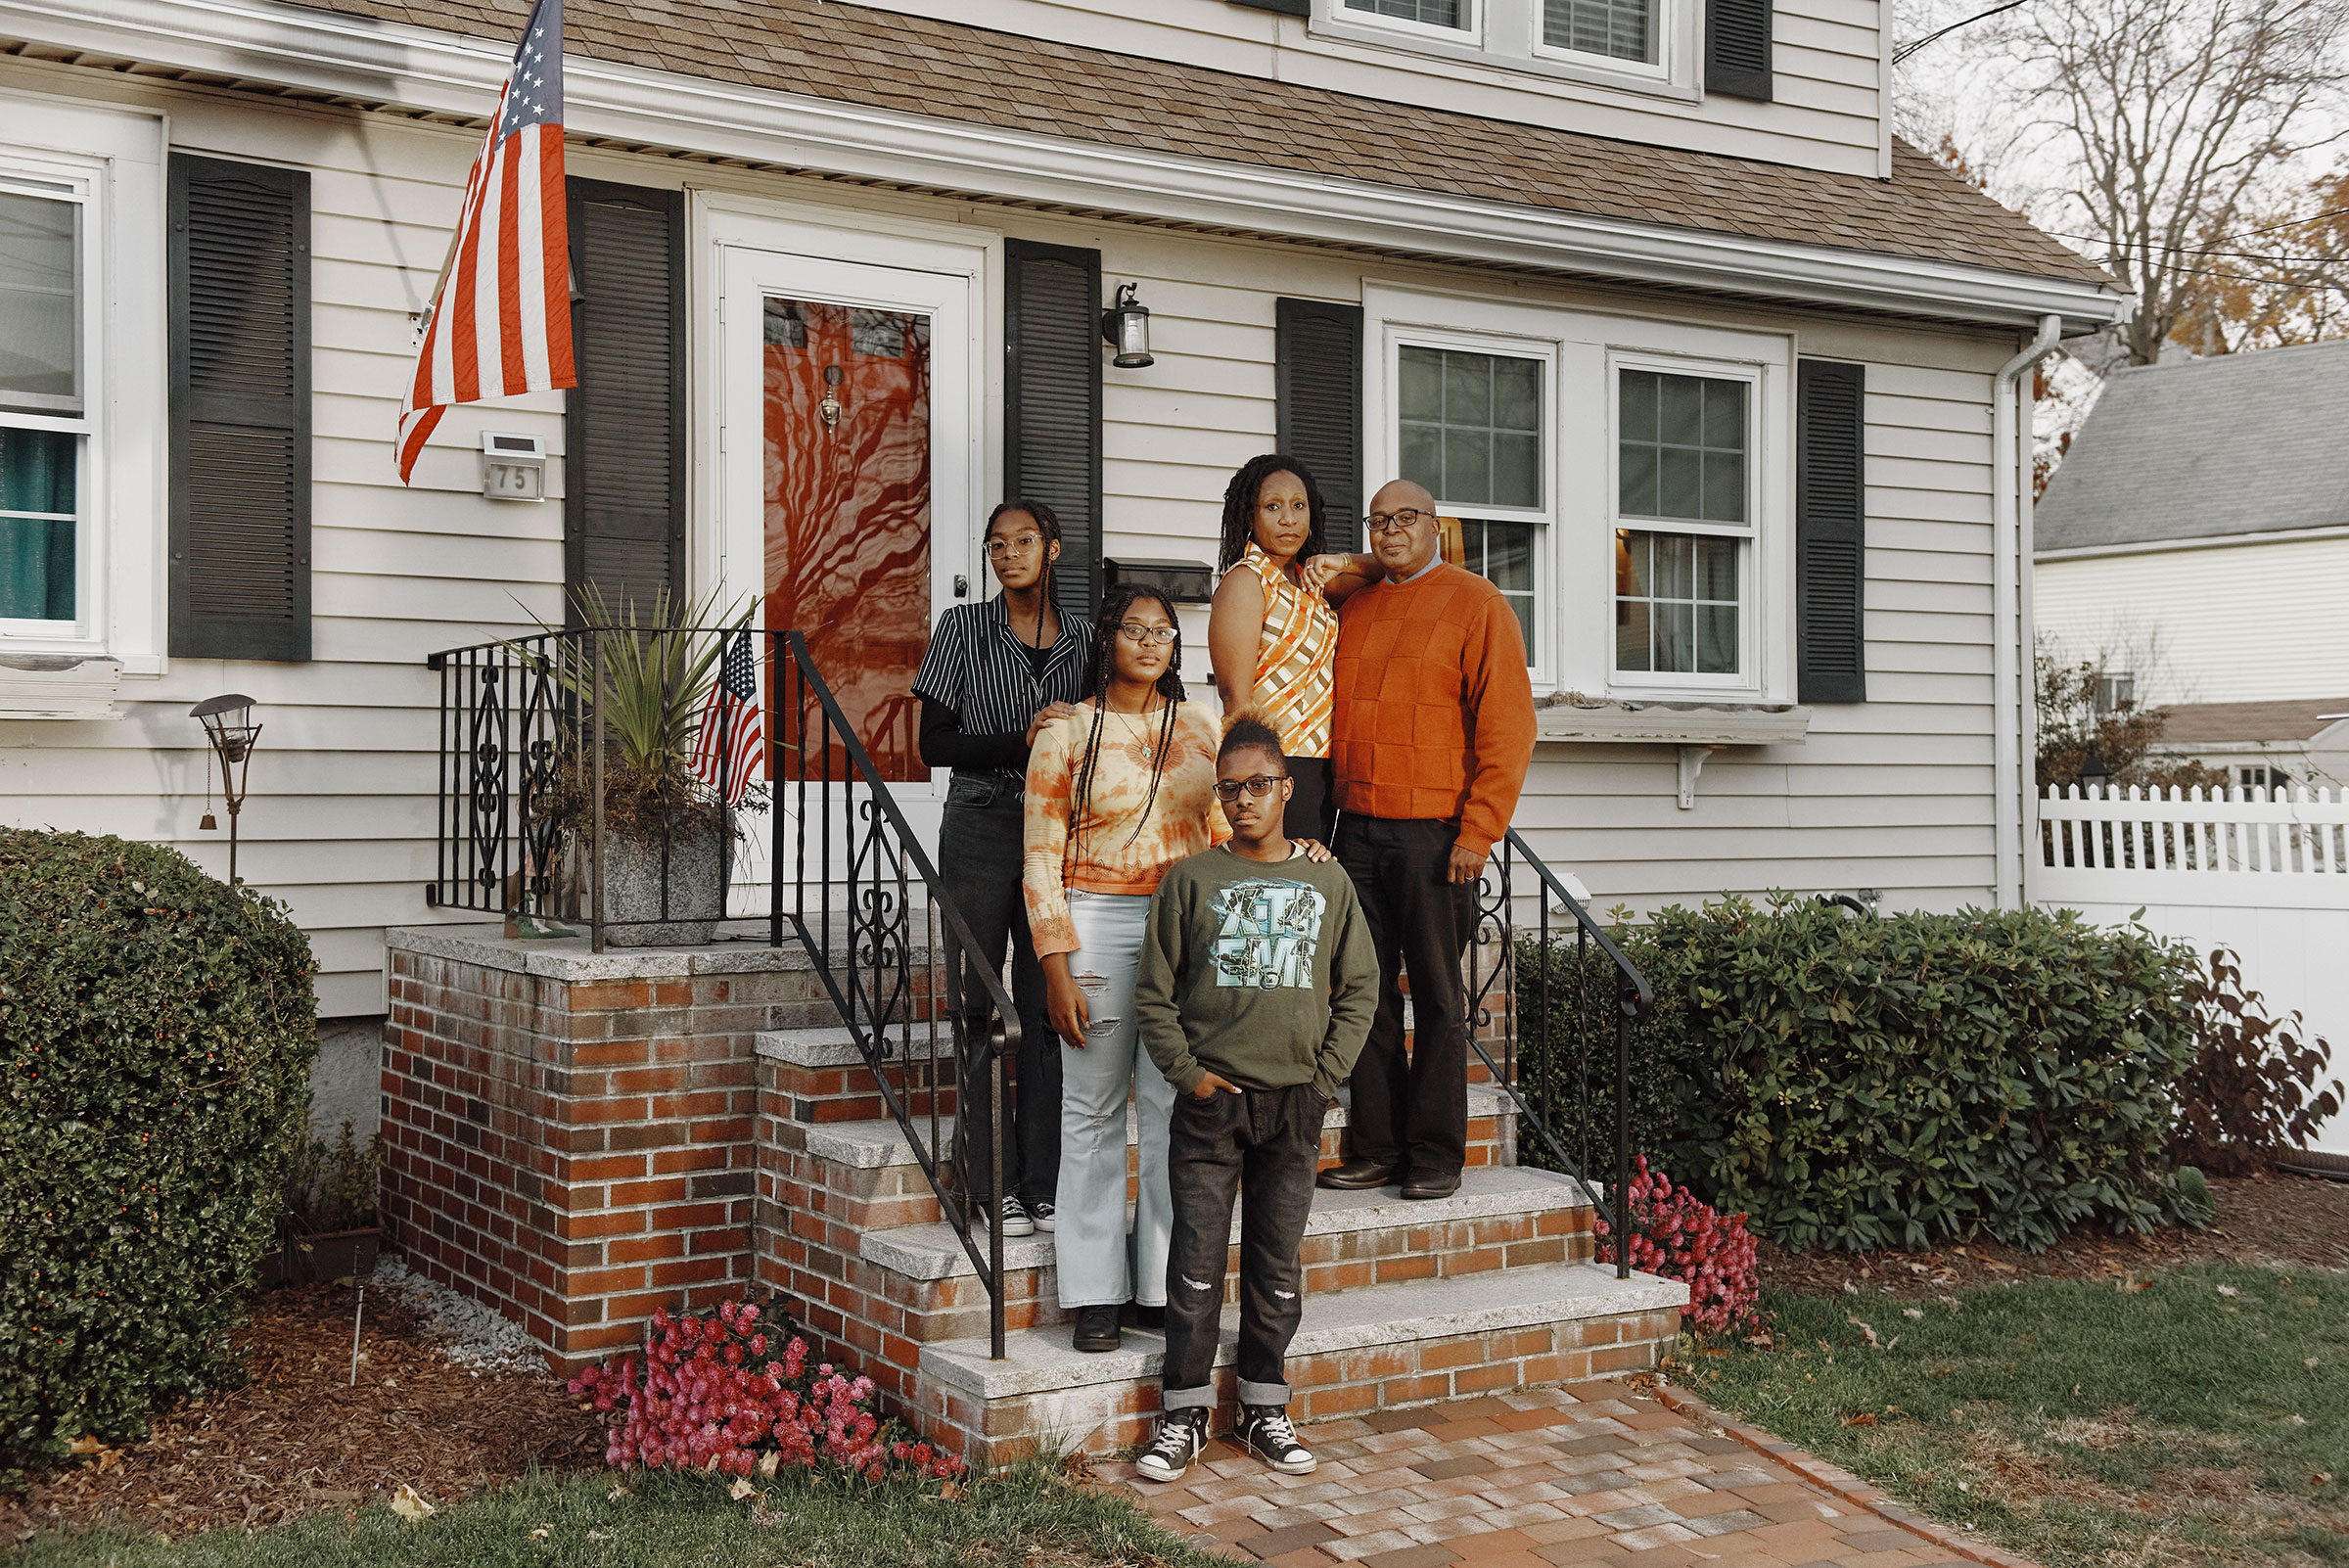 The Henry family outside their home in Malden on Nov. 18